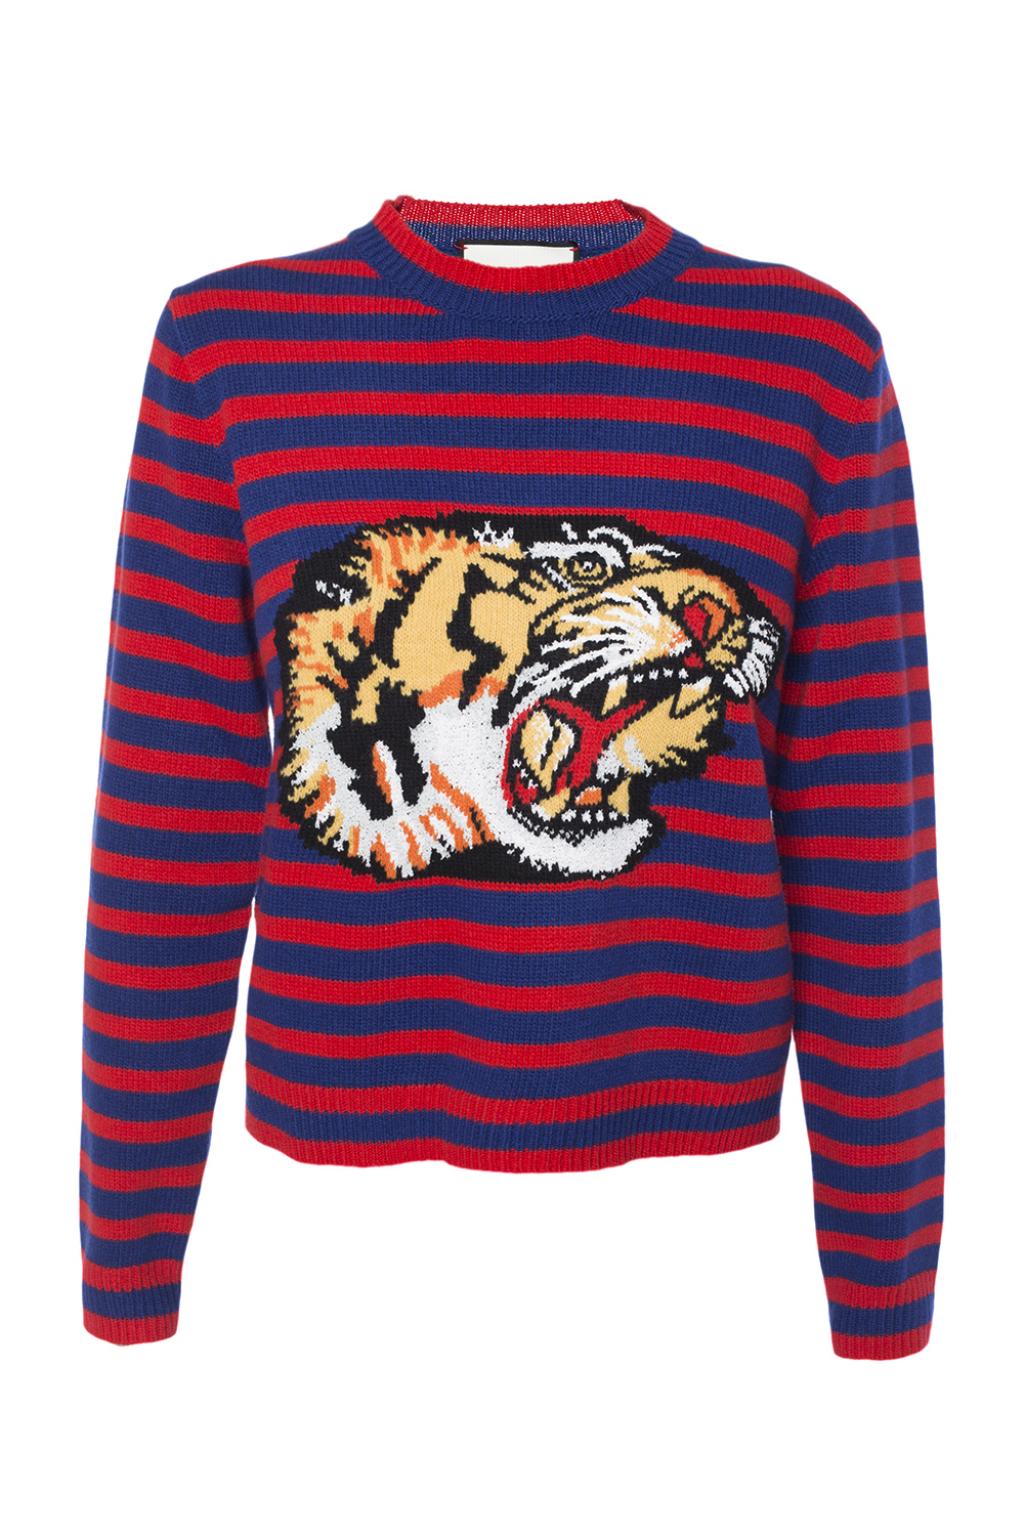 gucci striped tiger sweater